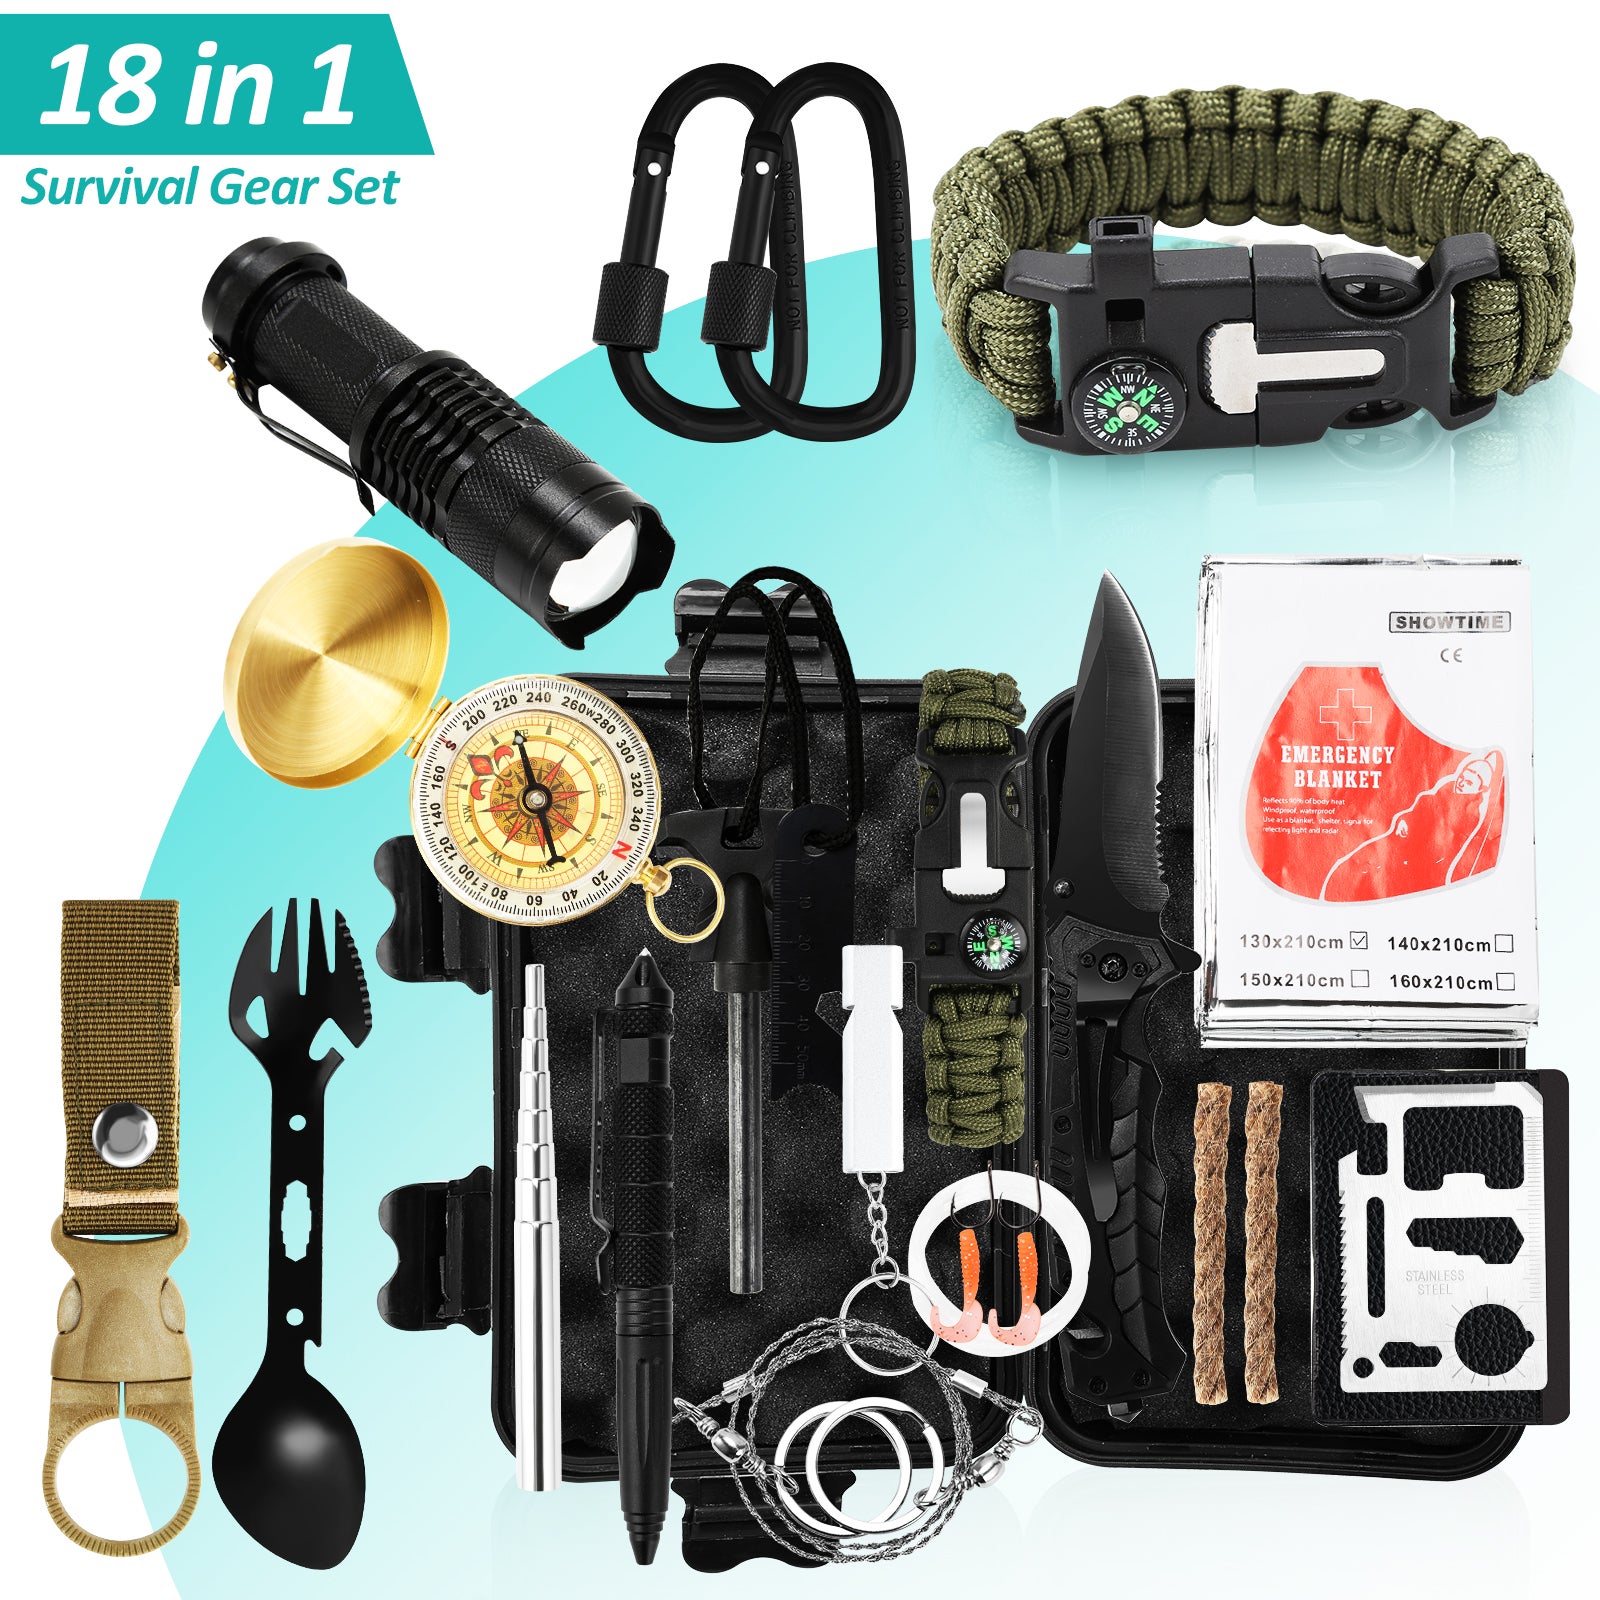 Kit de supervivencia de emergencia | Kit de supervivencia militar | Equipo  de supervivencia de emergencia y equipo de pesca para camping, senderismo